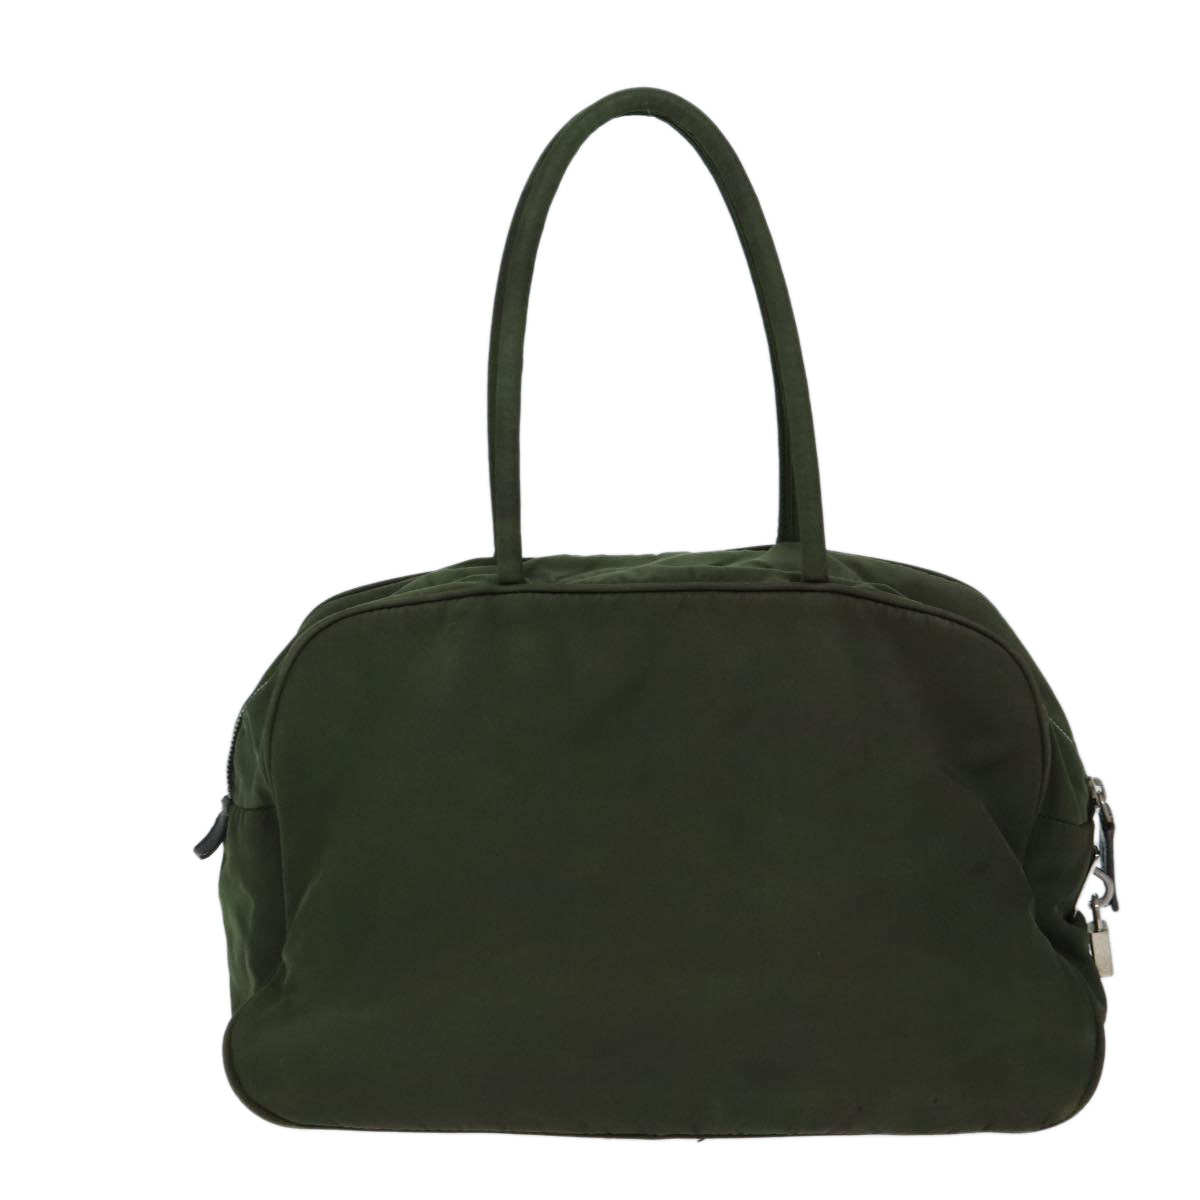 PRADA Hand Bag Nylon Khaki Auth 72642